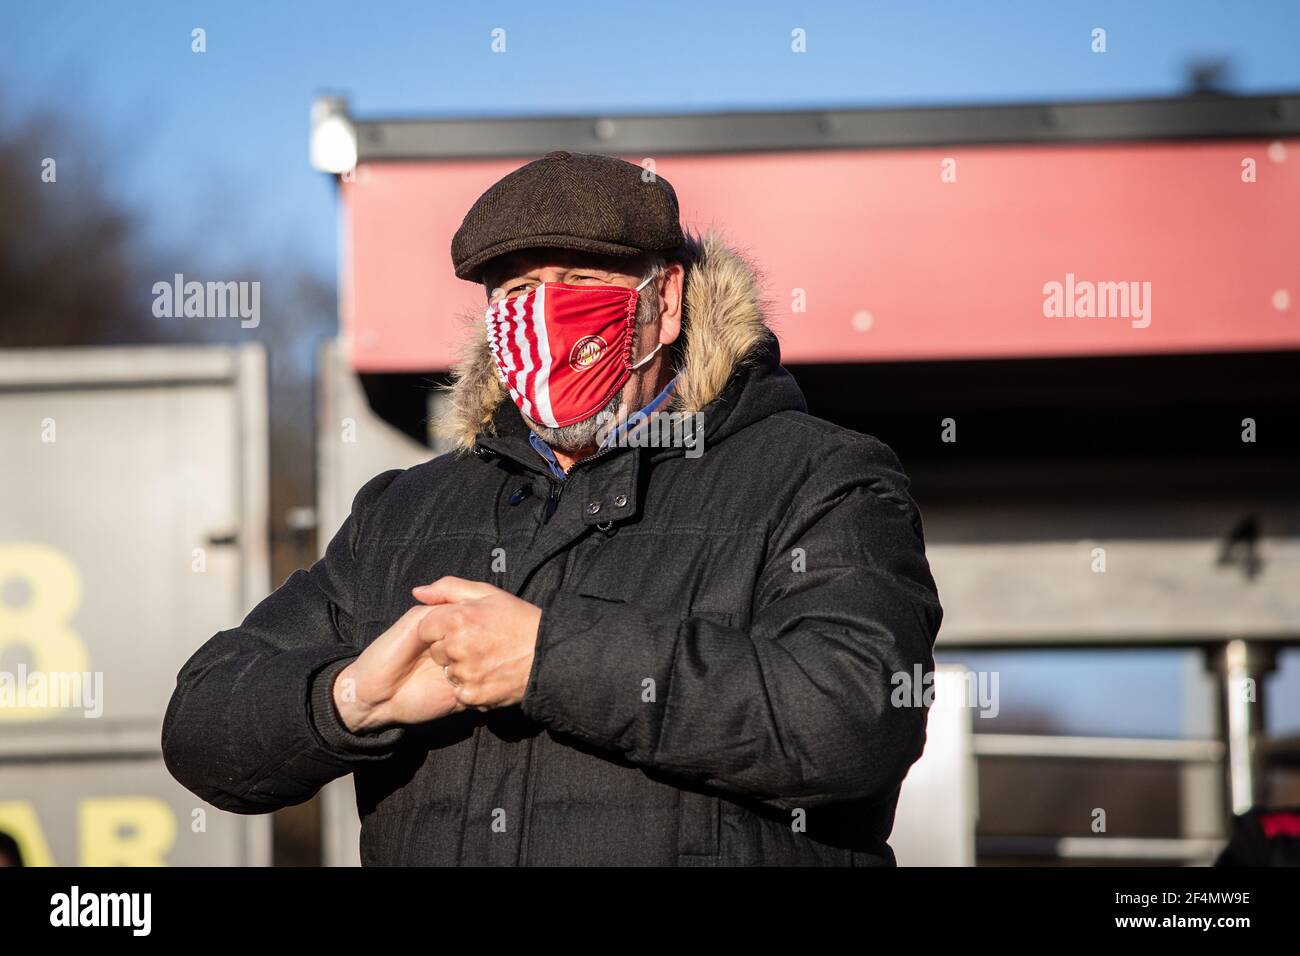 Männlicher Fußballfan betritt das Stadion und reinigt die Hände, während er Gesichtsbedeckung während der Coronavirus-Pandemie Covid-19 in England, Großbritannien trägt Stockfoto